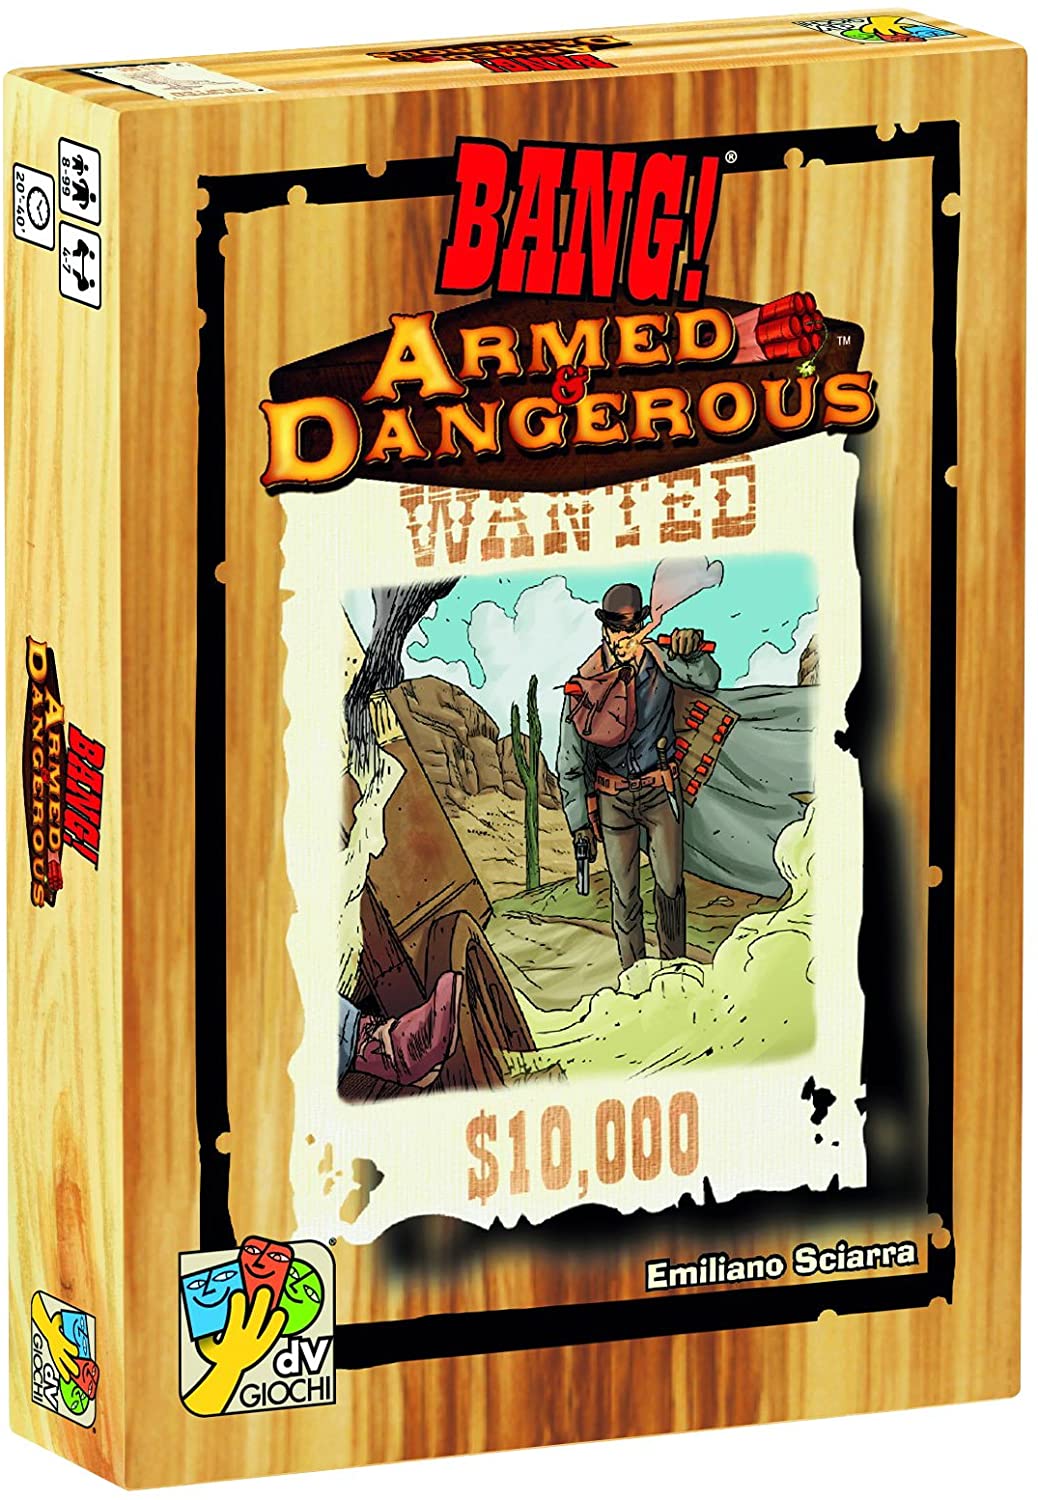 Bang! - Armed & Dangerous